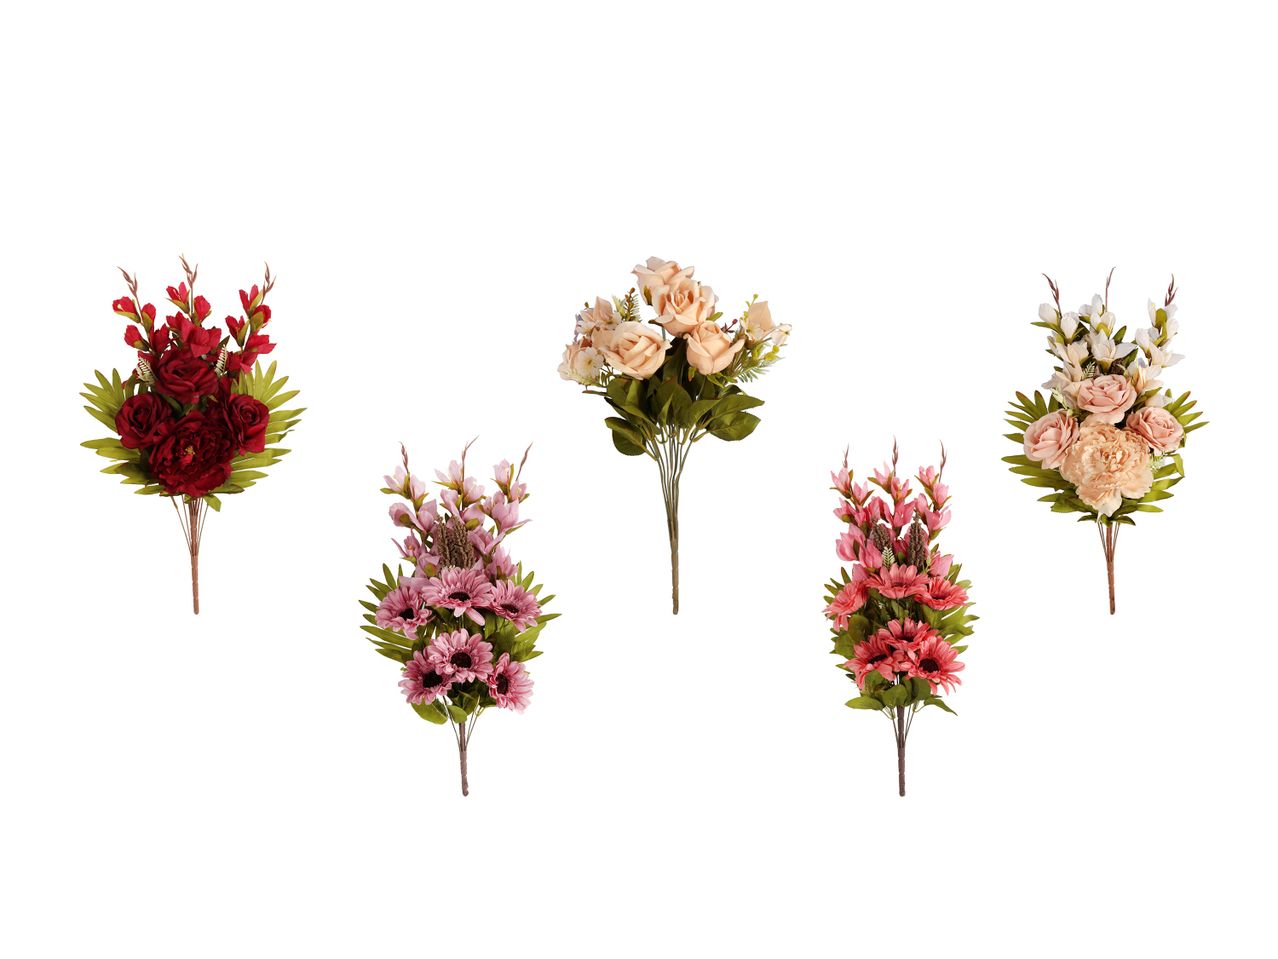 Bukiet sztucznych kwiatów Premium , cena 34,99 PLN 
Bukiet sztucznych kwiatów ...